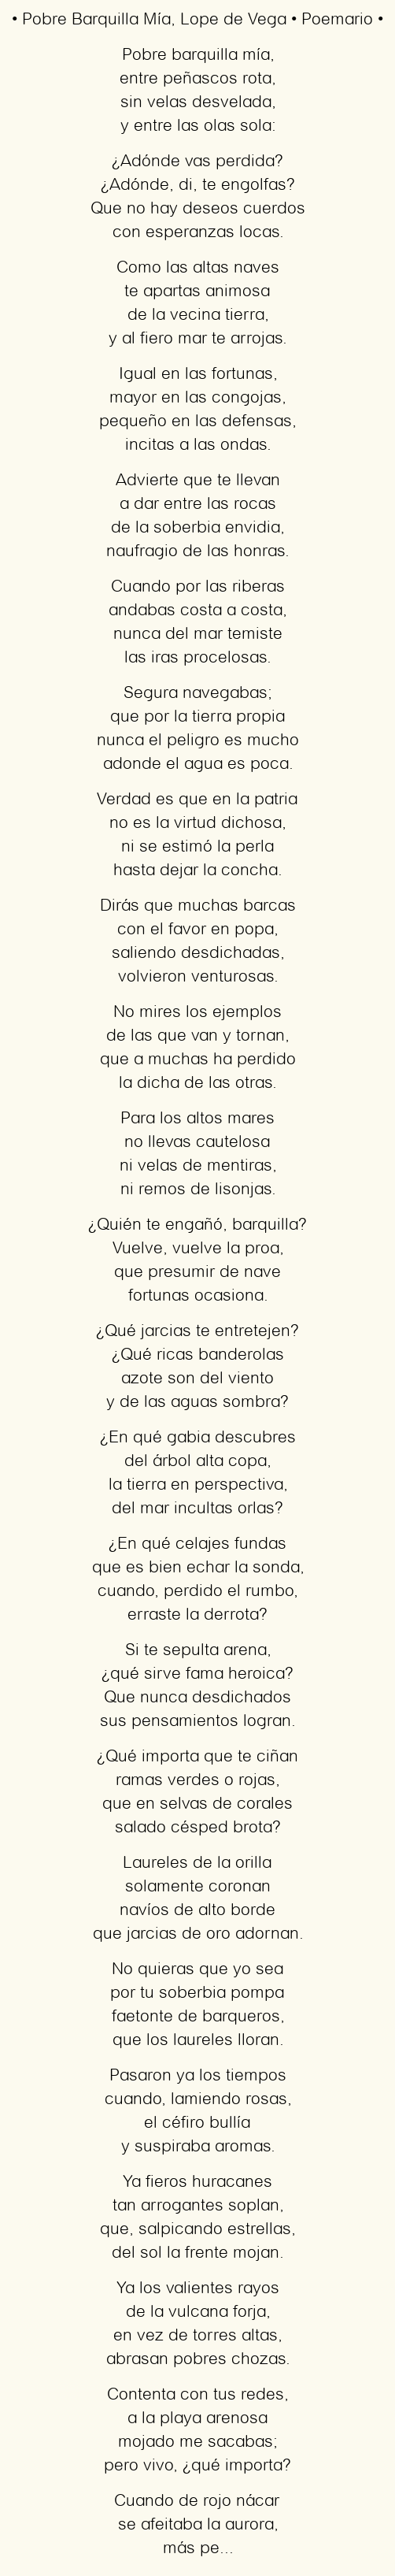 Imagen con el poema Pobre Barquilla Mía, por Lope de Vega